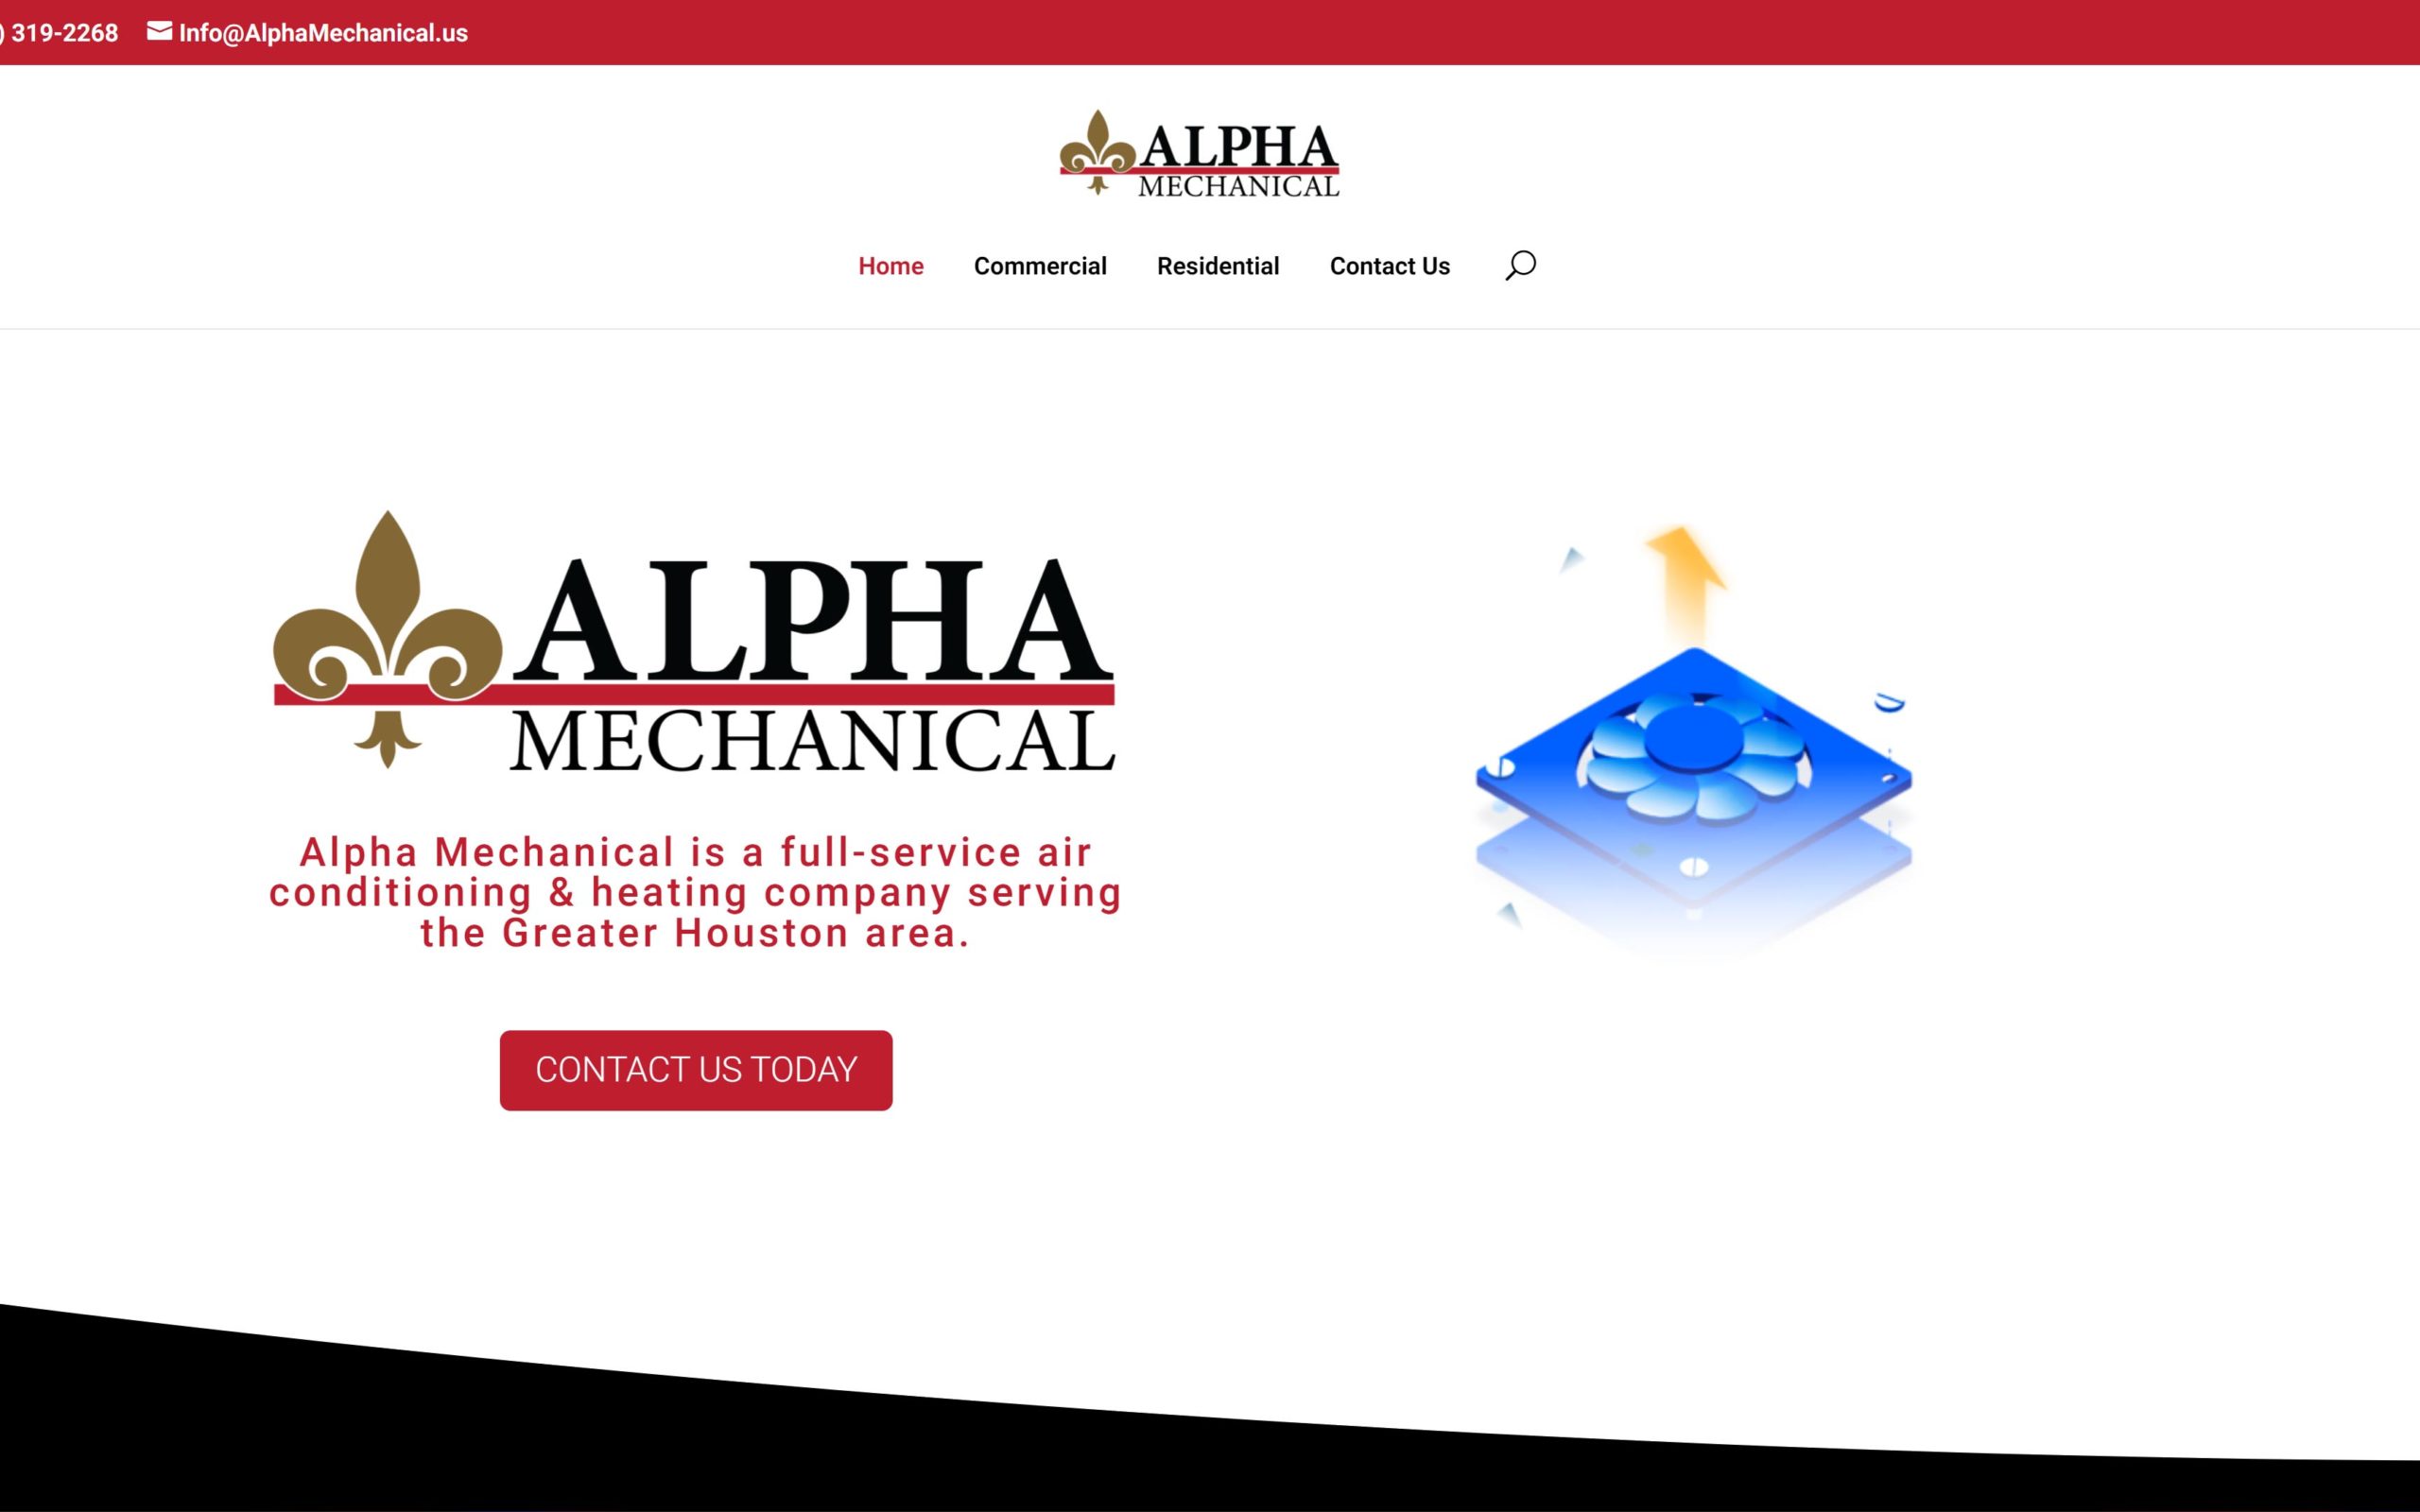 Alpha Mechanical 1920 x 1200